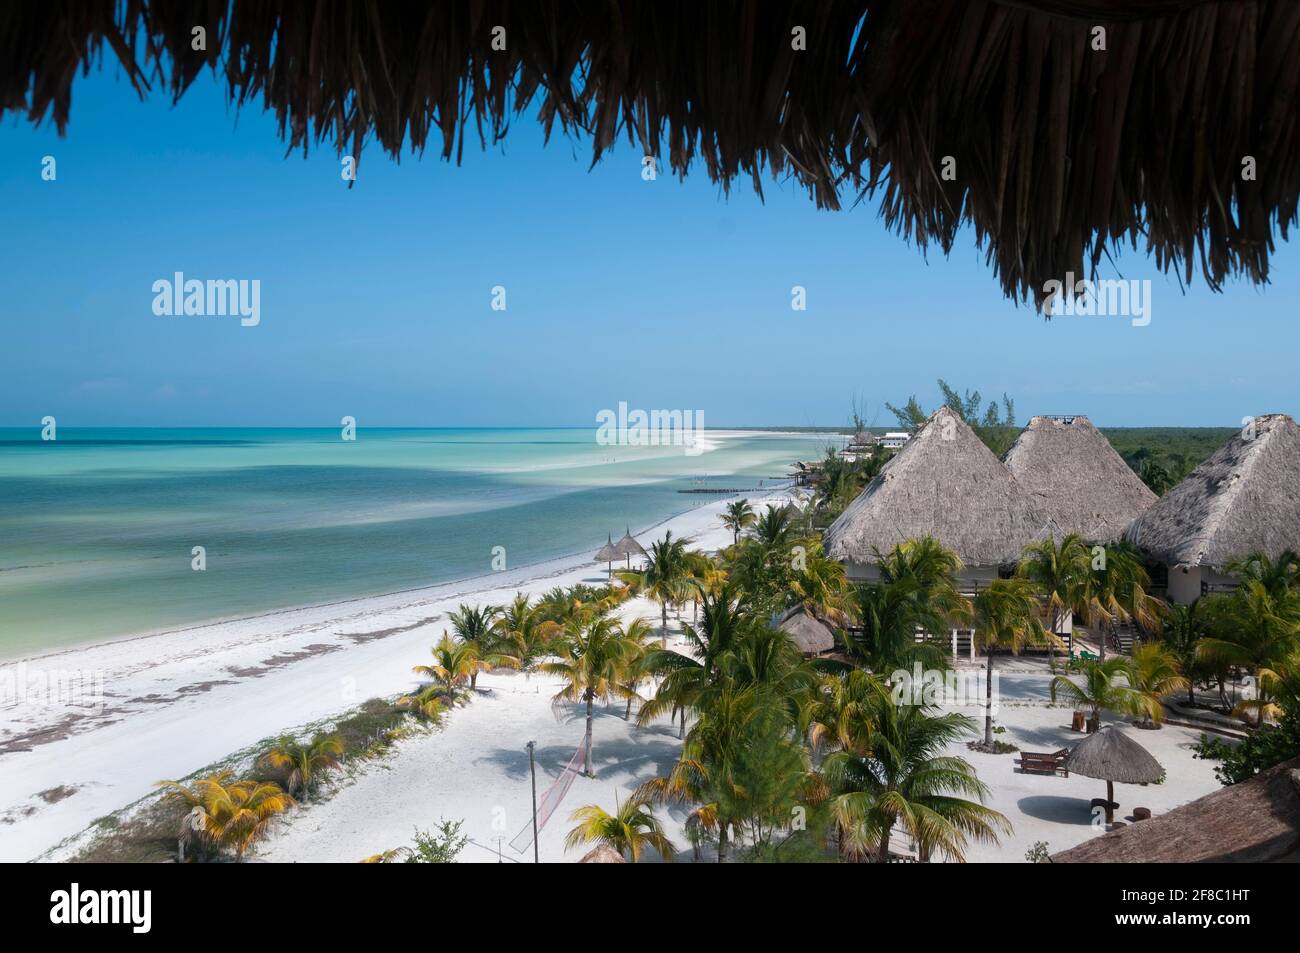 Vue panoramique sur une plage de l'île Holbox au Mexique, avec sable blanc, palmiers et cabanes en chaume. La destination parfaite Banque D'Images